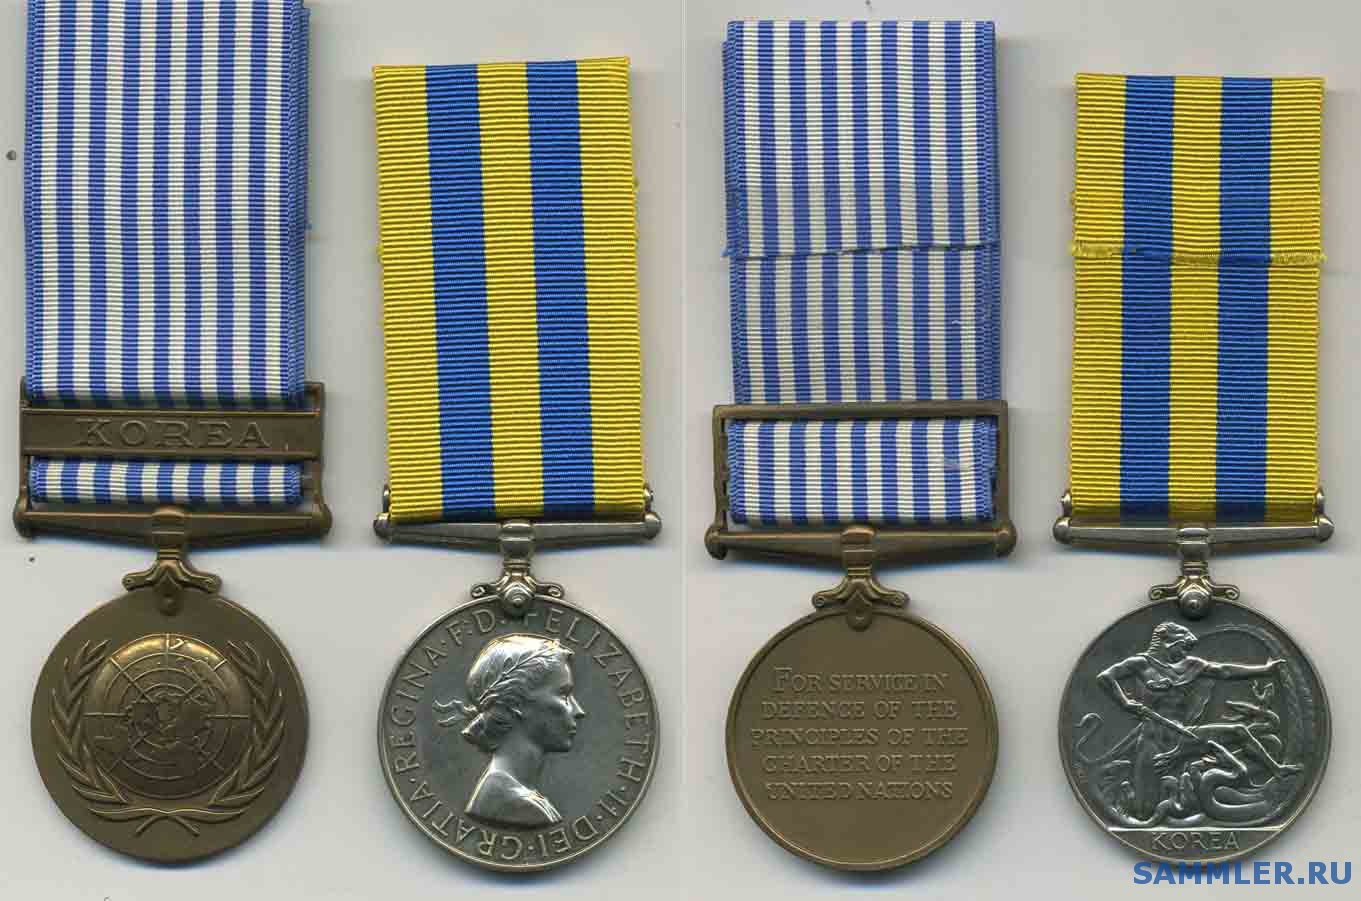 Korea_Medal.jpg